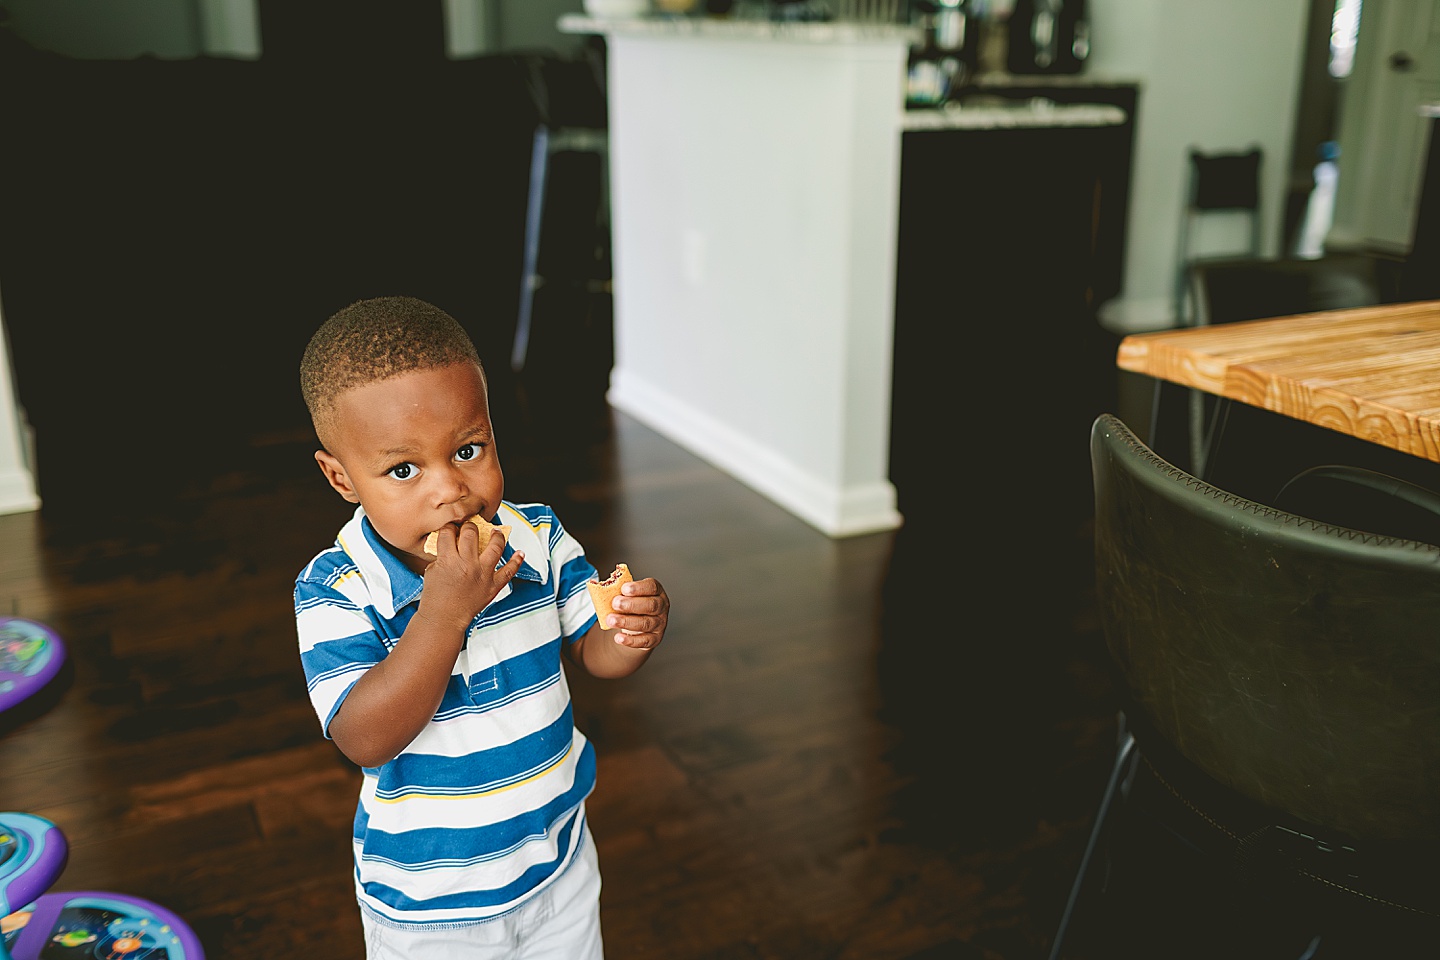 Kid eating snack